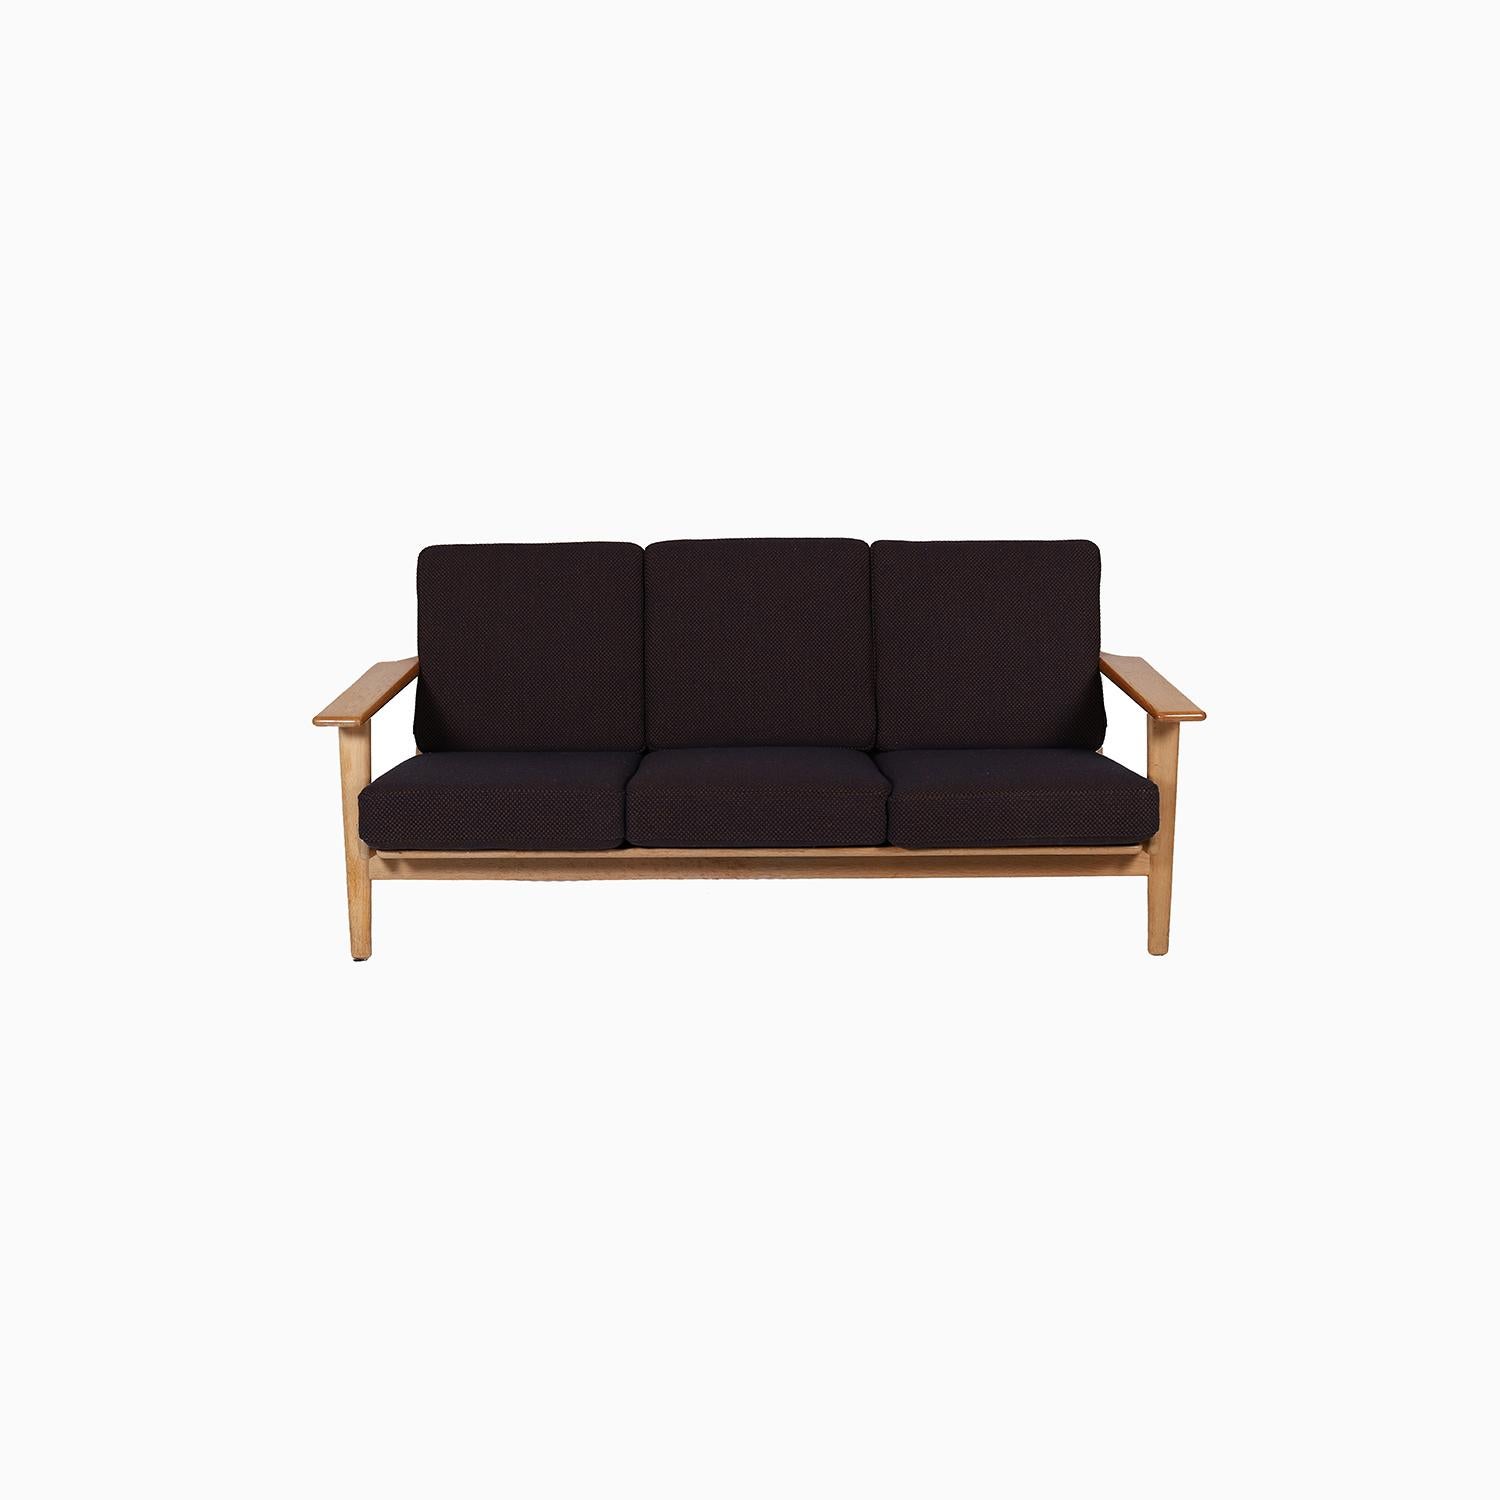 Dreisitziges Sofa, entworfen von Hans Wegner für Getama, Modell 290 in Eiche. Neu gepolstert mit Kvadrat-Textilien Sisu. Die Reinigung des Rahmens wird beim Kauf abgeschlossen sein.


Die professionelle und fachgerechte Restaurierung von Möbeln ist